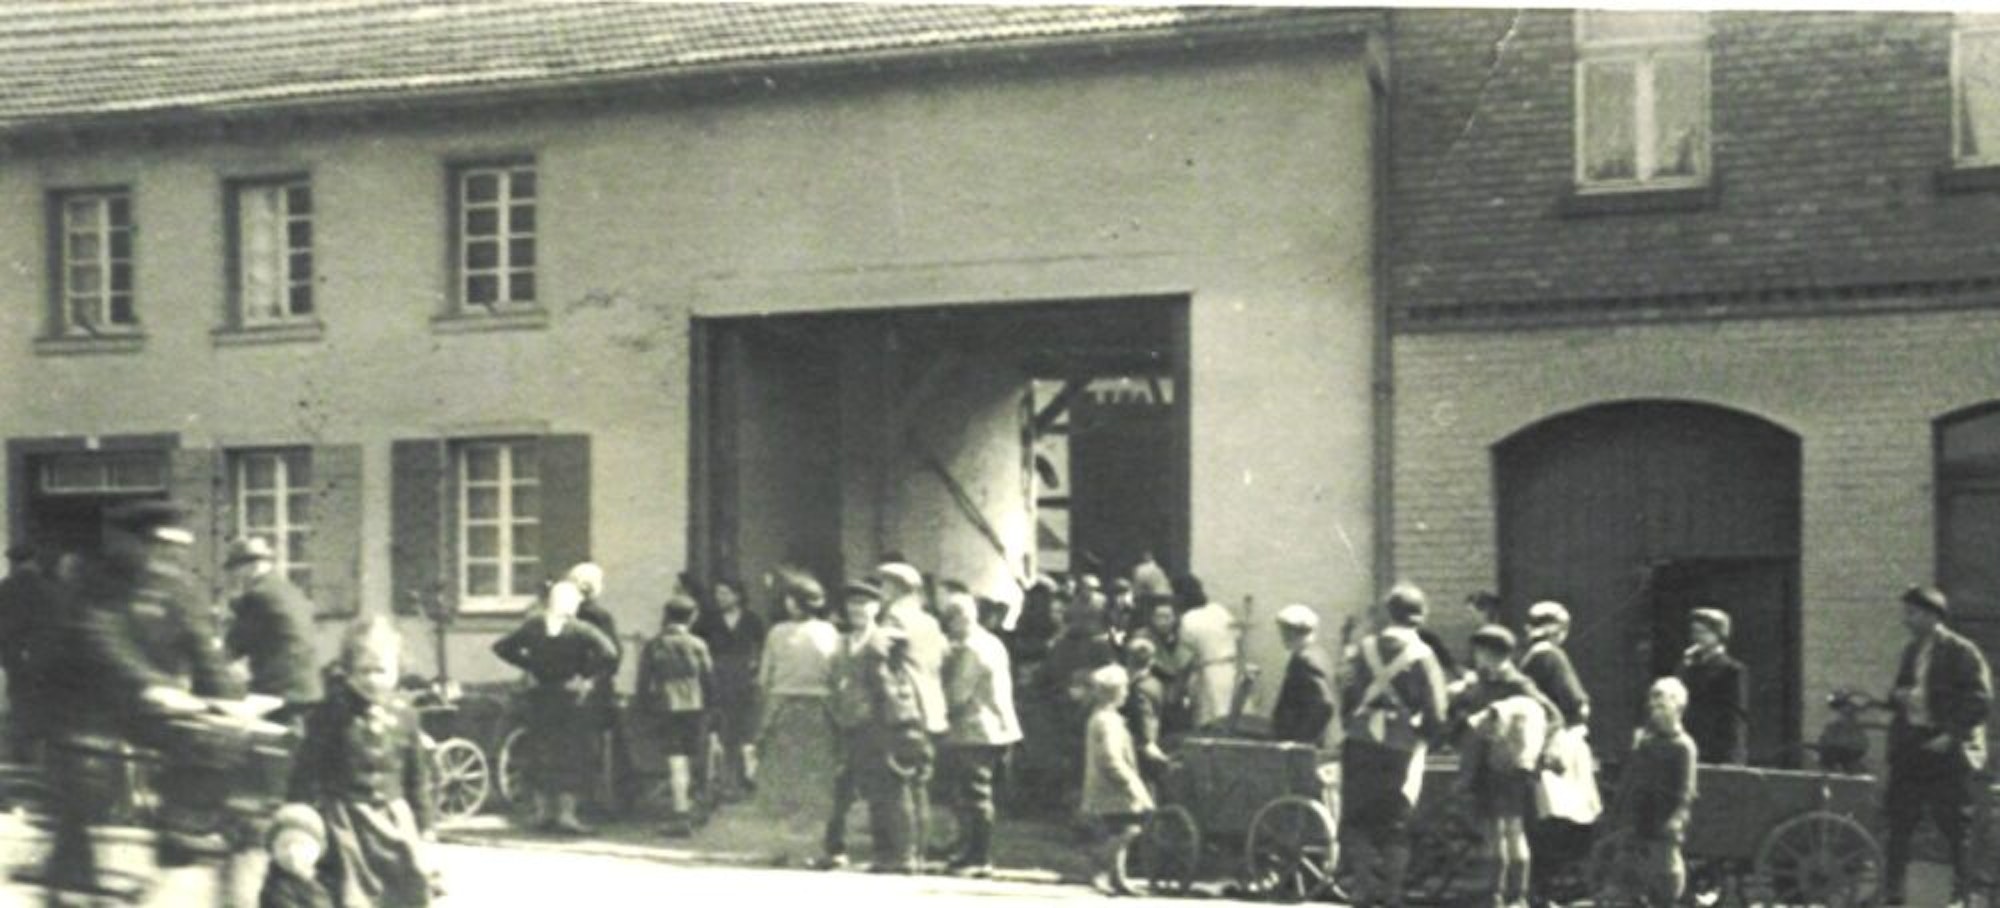 Der historische Esserhof an der Liblarer Hauptstraße zog viele Kunden an, die mit dem Handwagen ihre Kartoffeln holten.